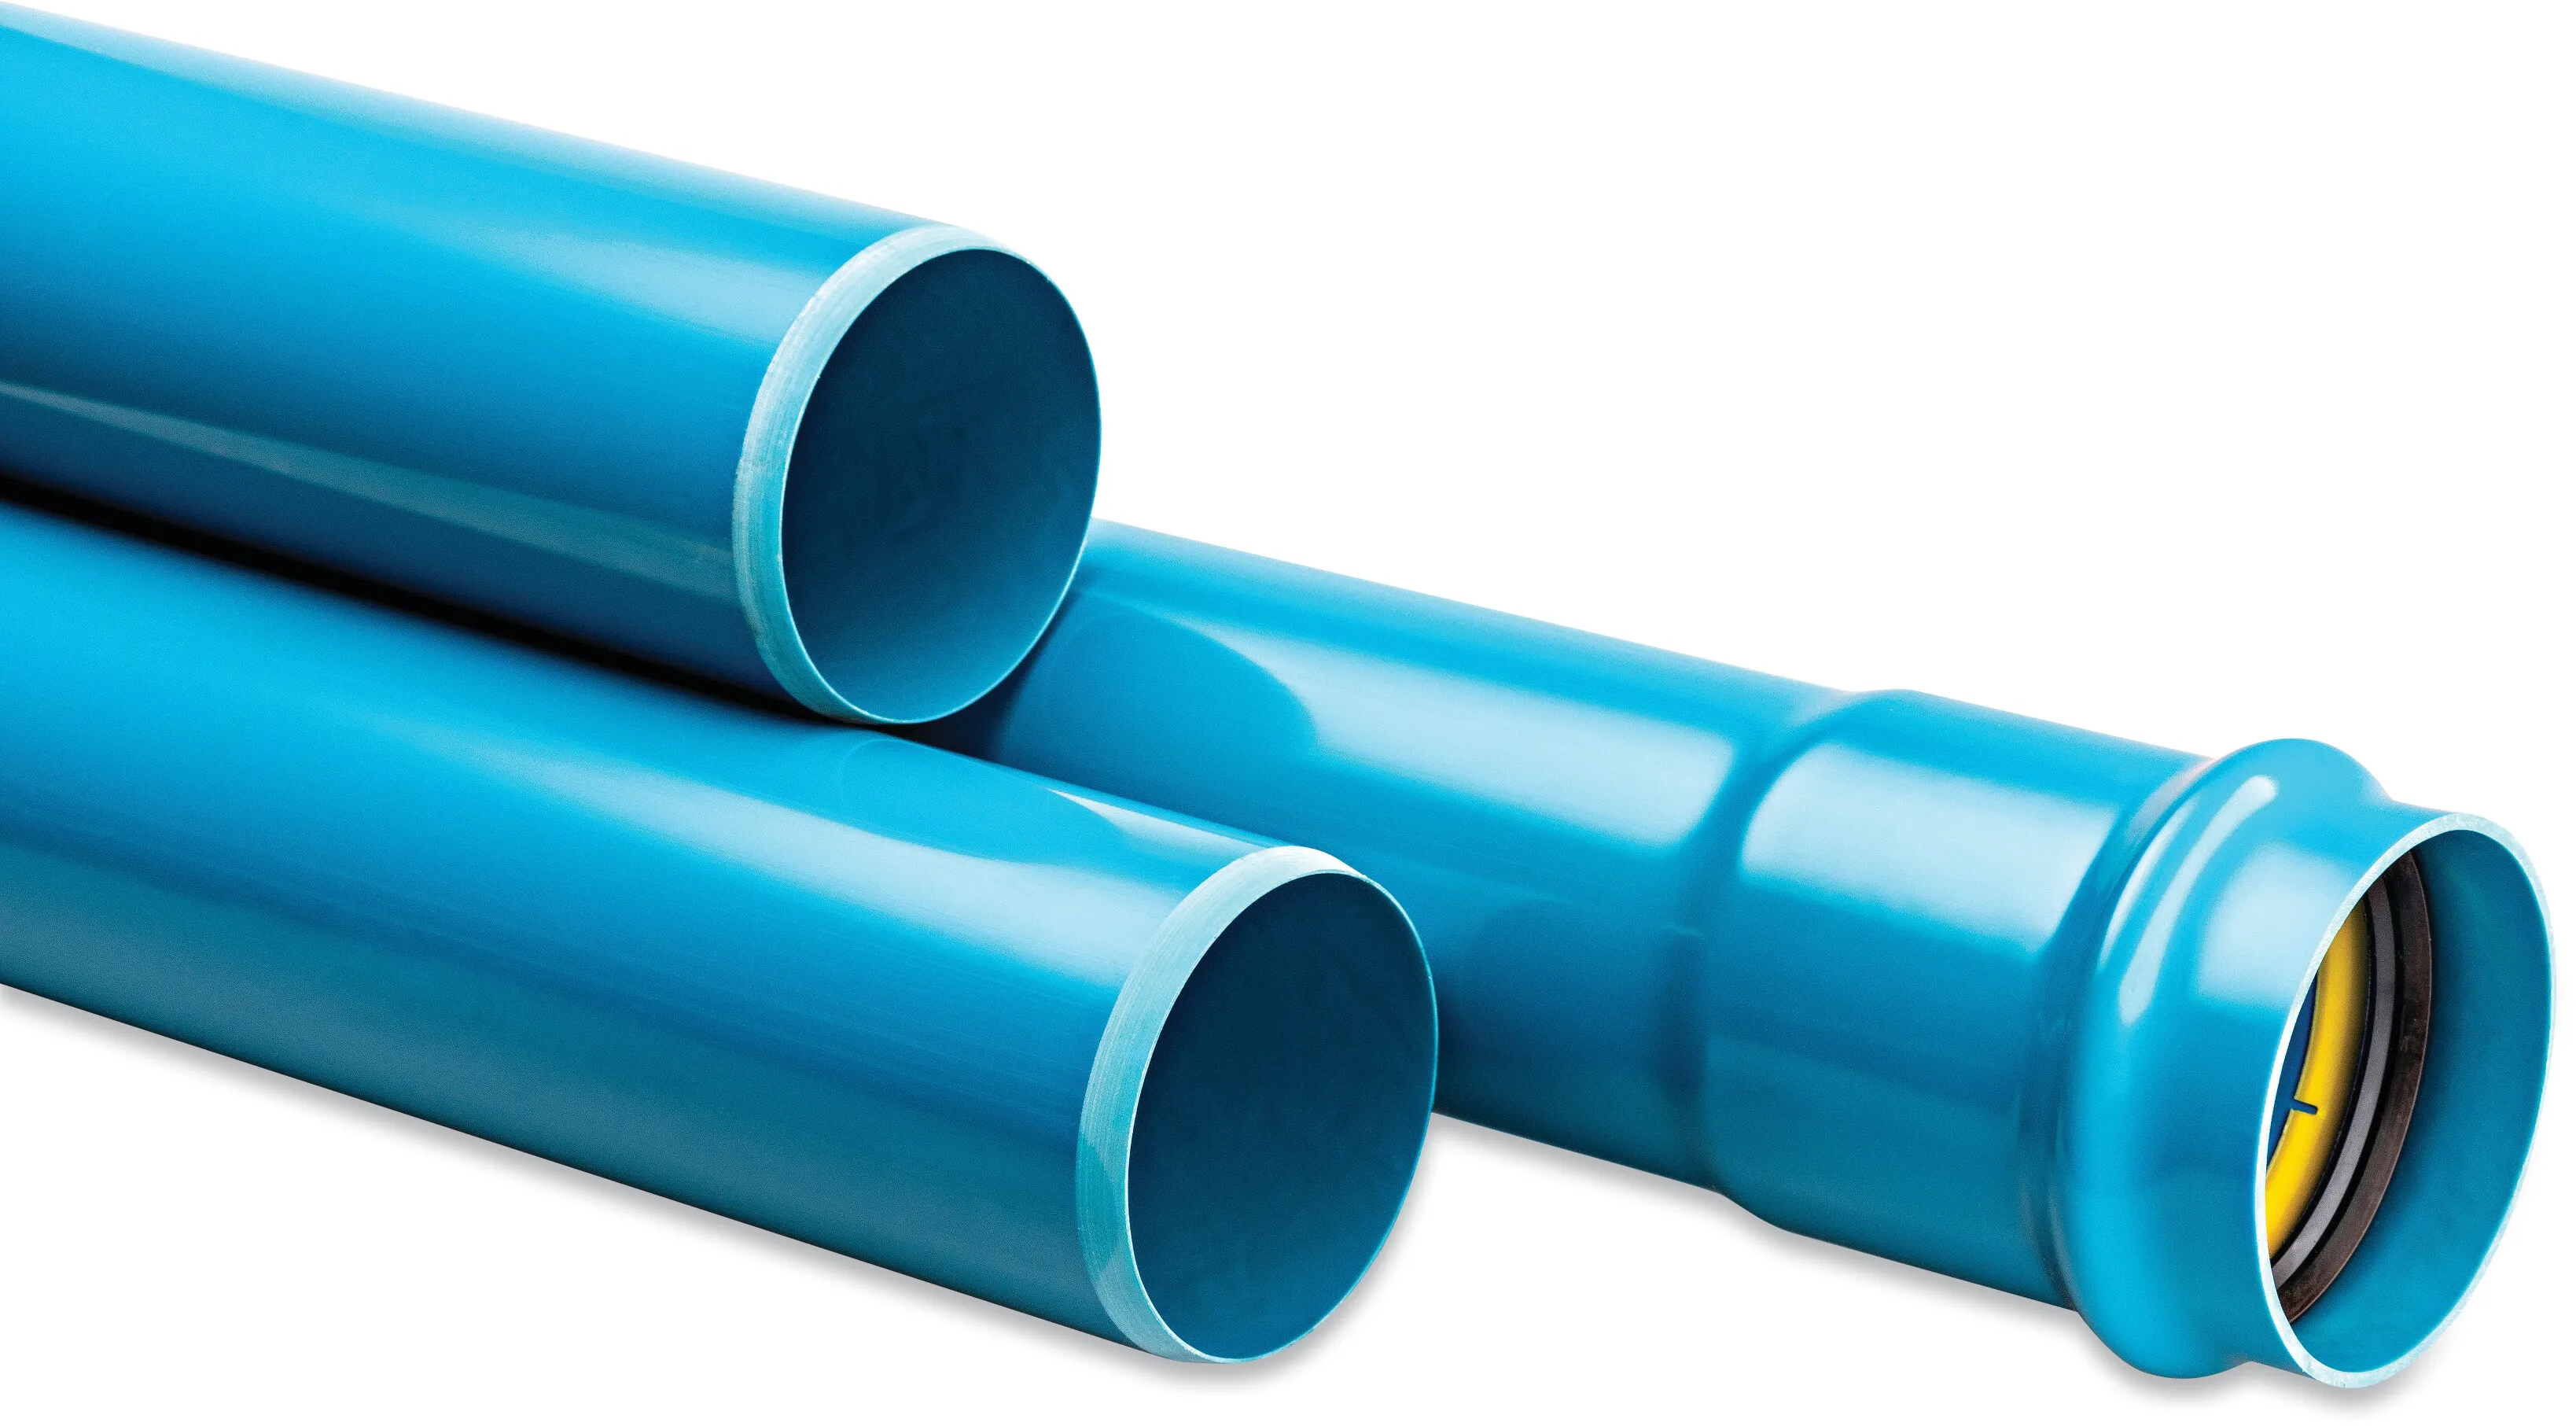 Rura ciśnieniowa PVC-A 90 mm x 4.0 mm pierścień uszczelniający x gładkie ISO-PN16 niebieski 6m KIWA